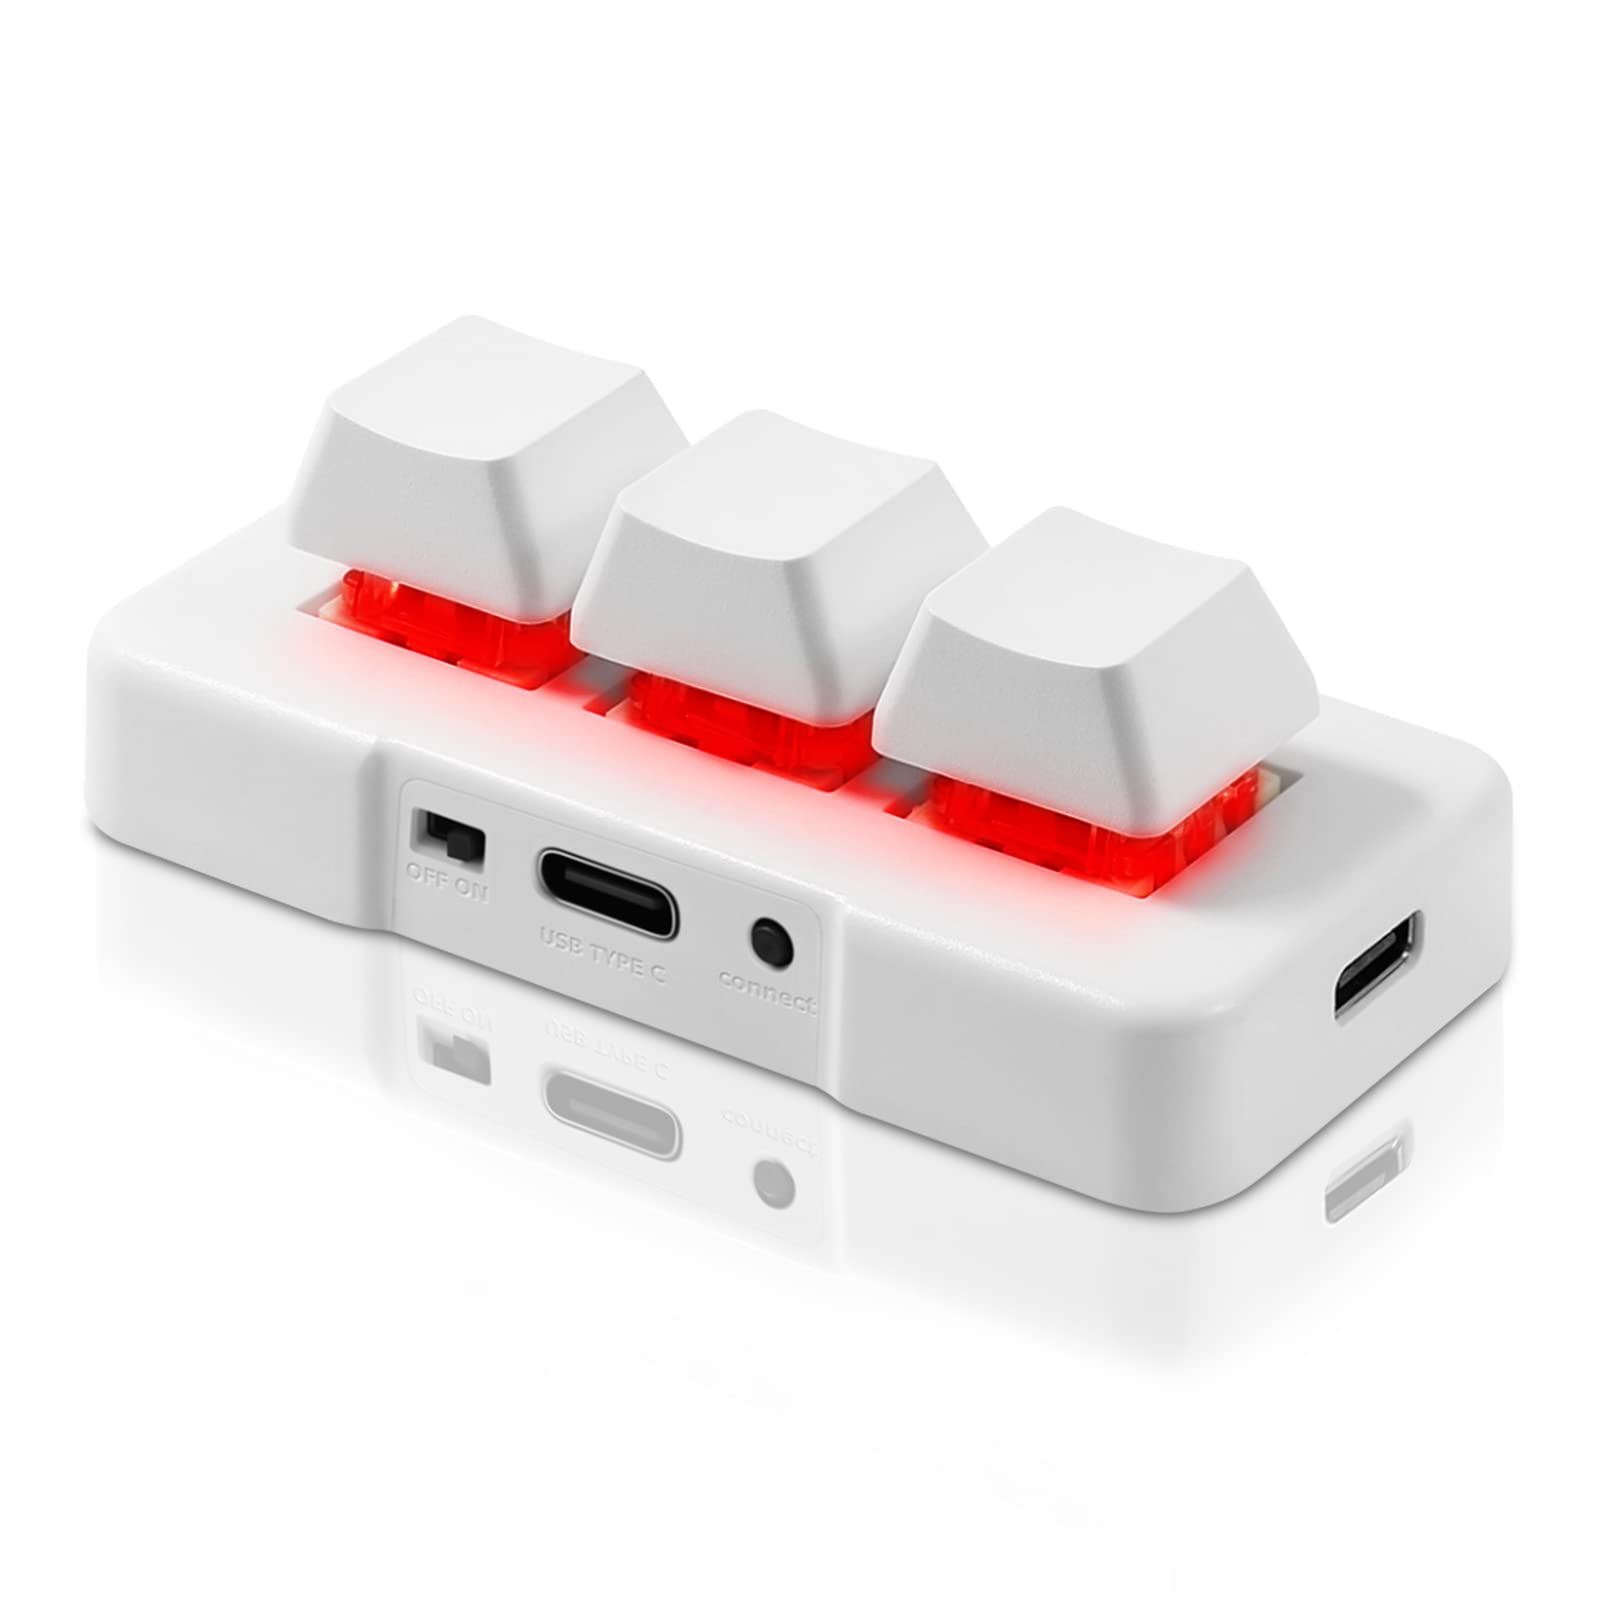 PCsensor 3-Key Mini Keypad Wireless Mechanical Gaming Keyboard Hot Key Customized Program with RGB Led